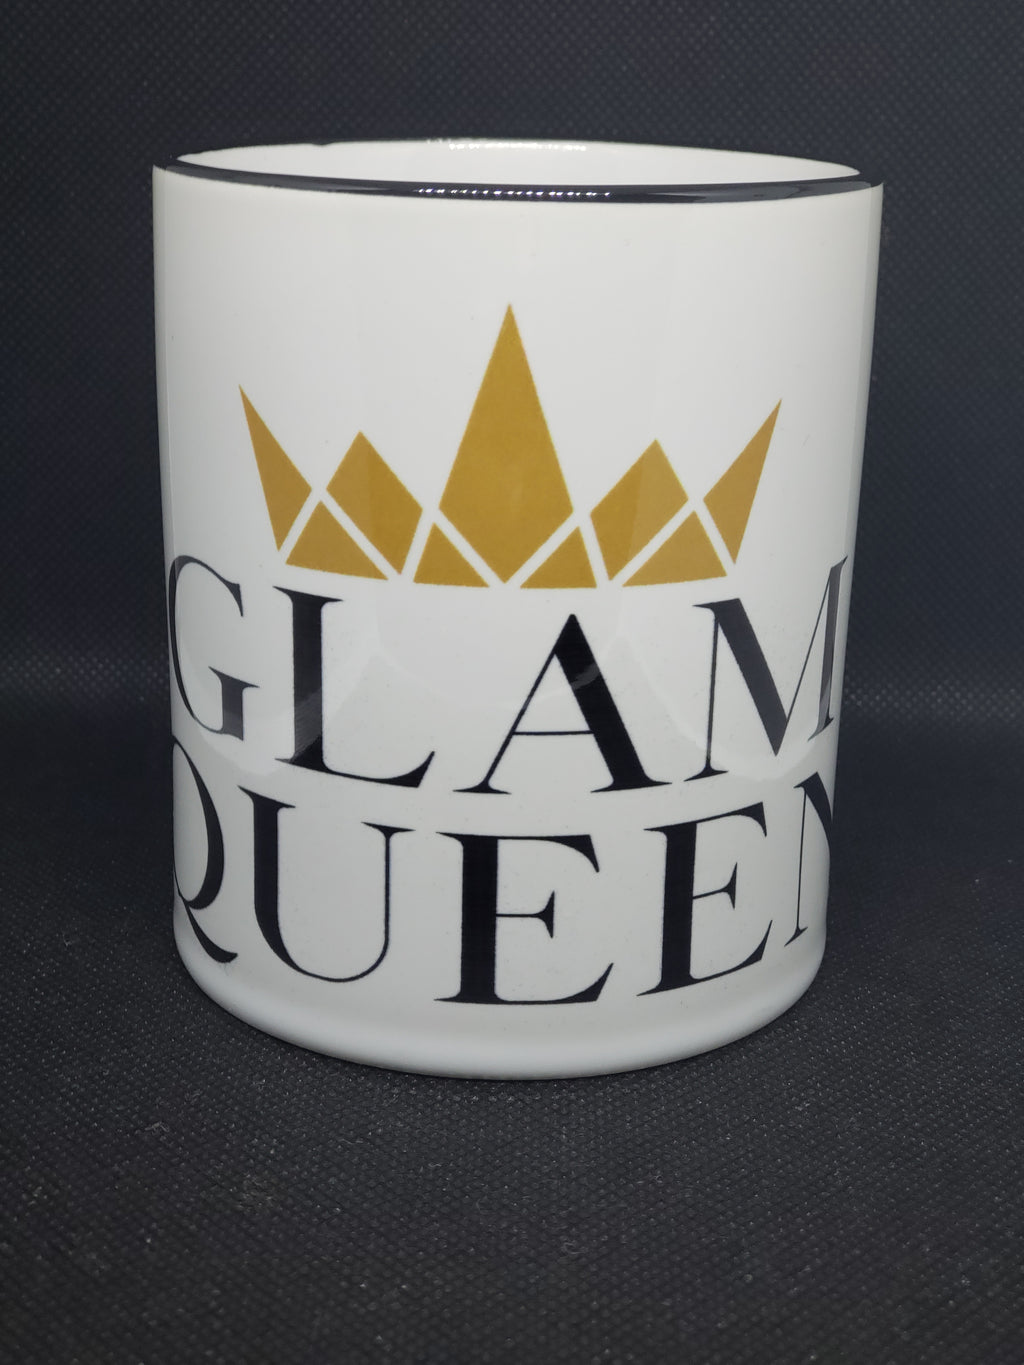 Glam Queen